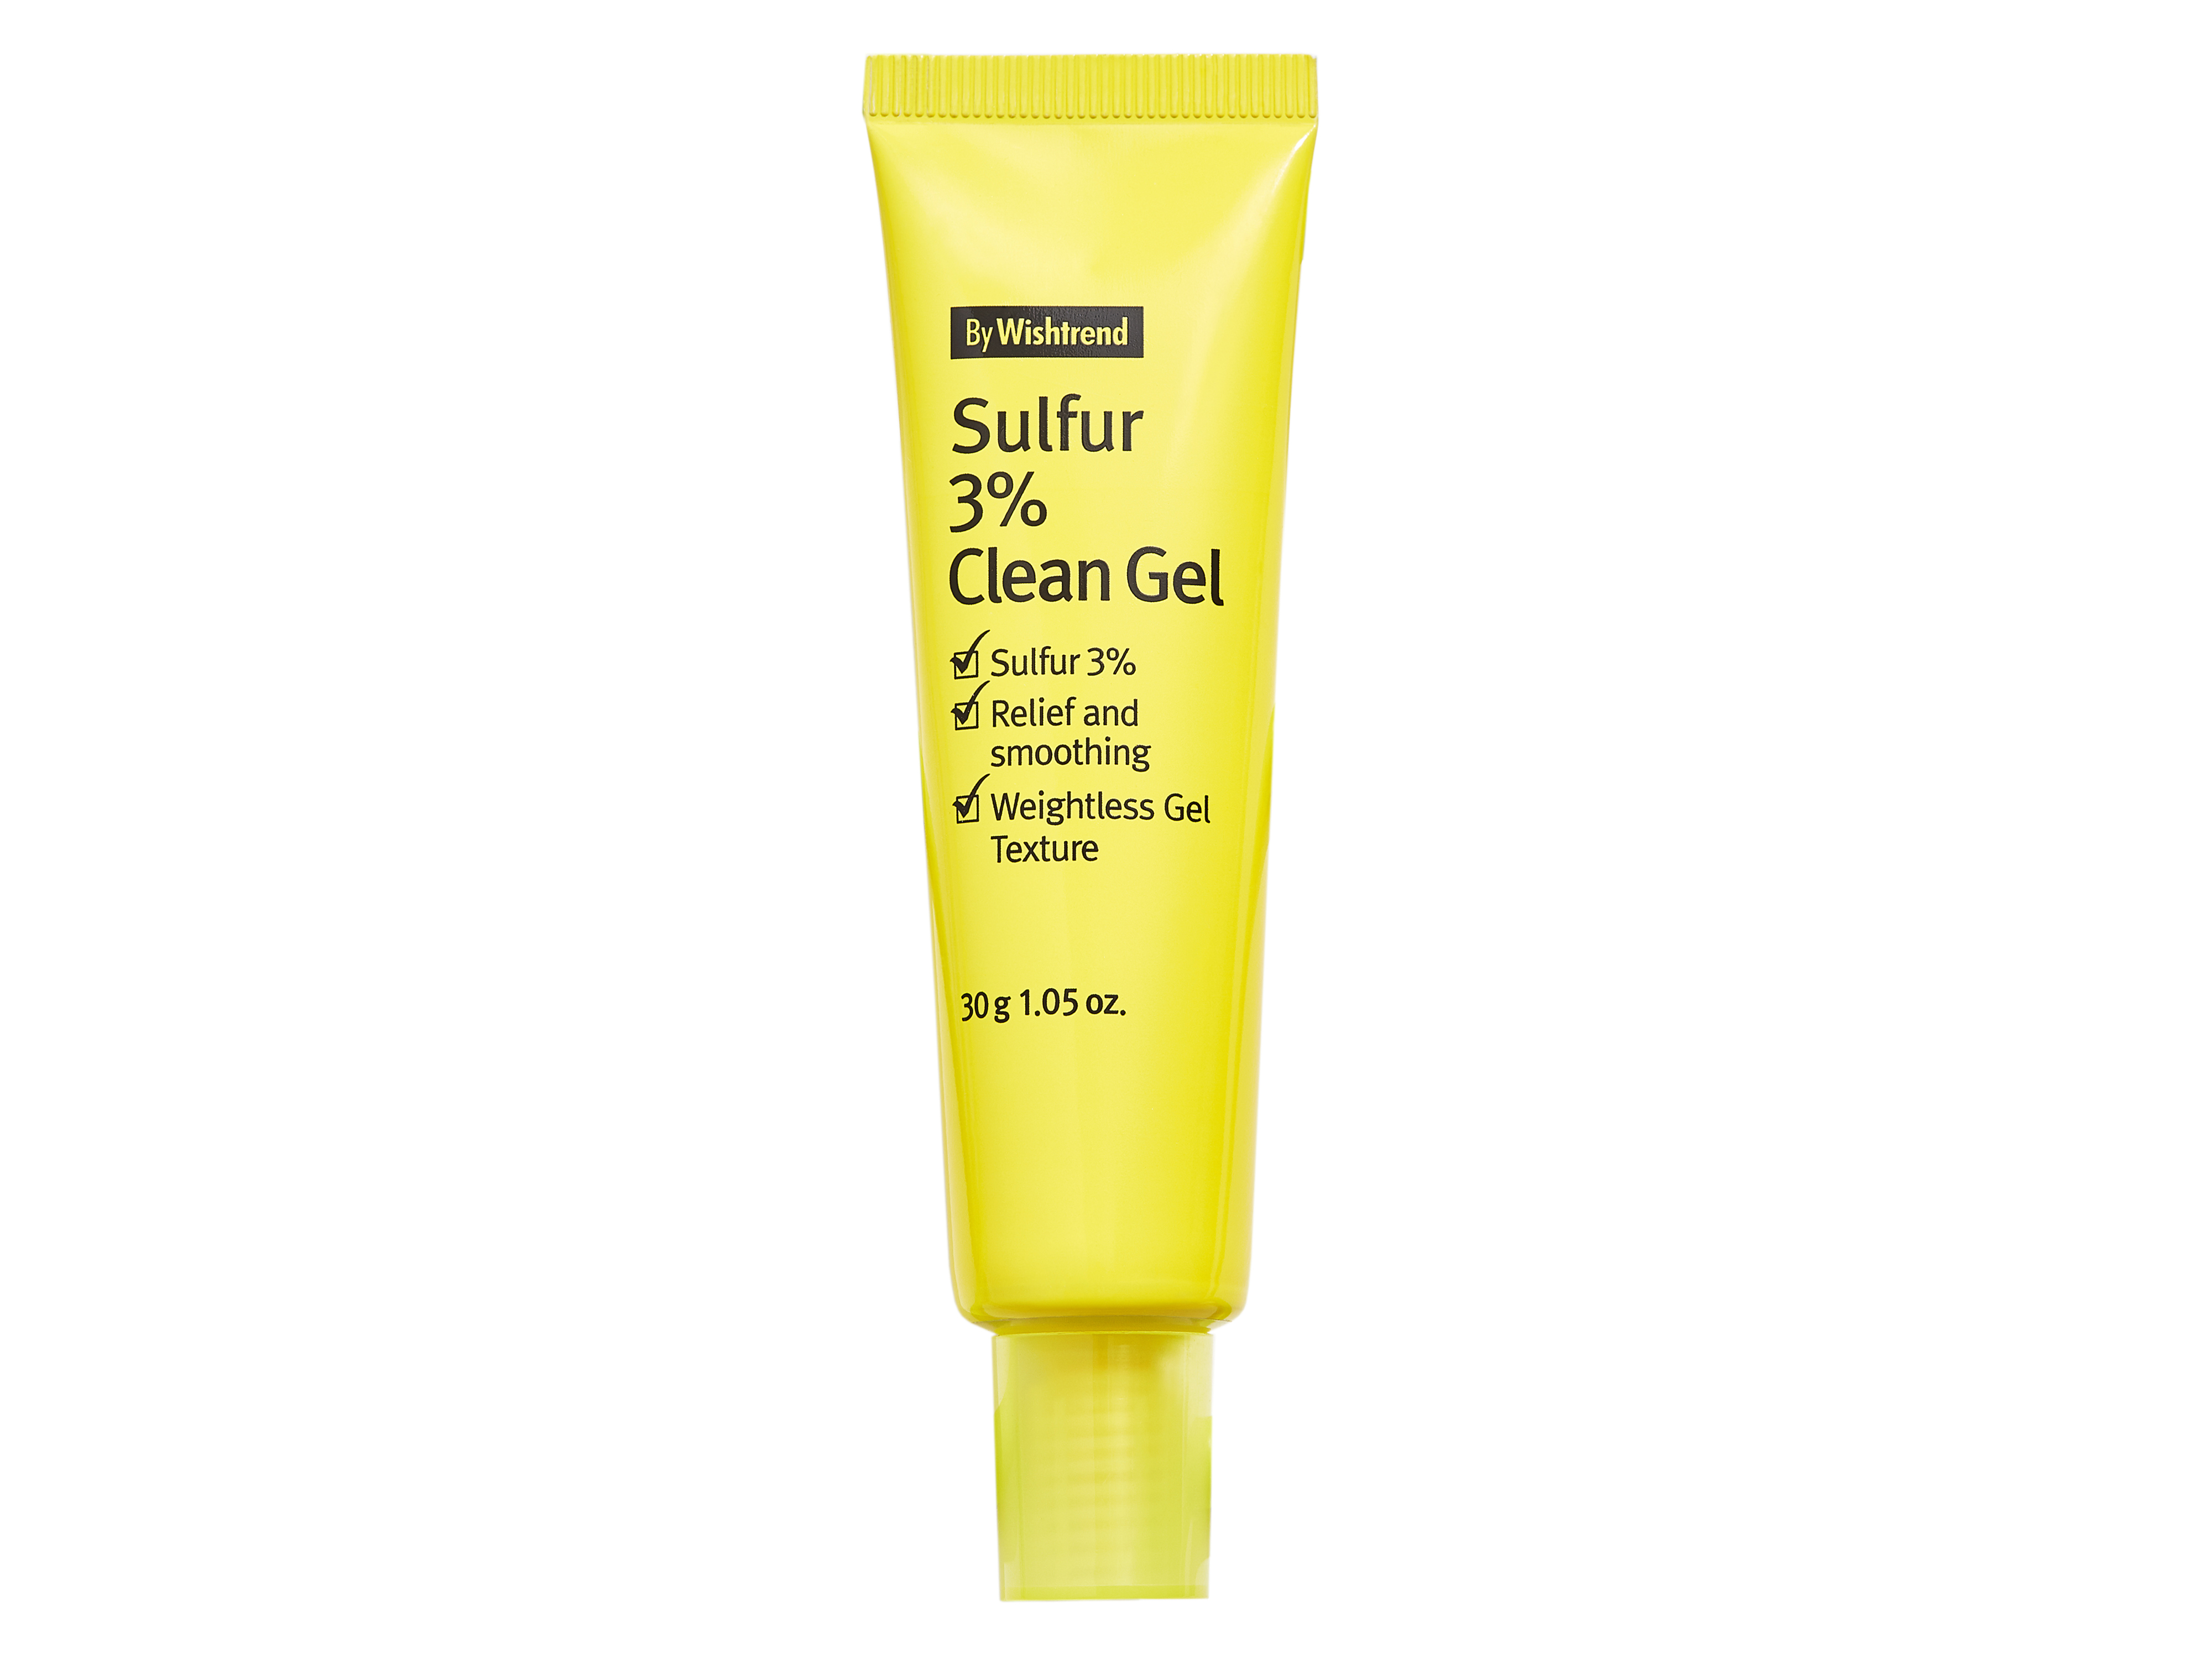 By Wishtrend Sulfur 3% Clean Gel, 30 ml